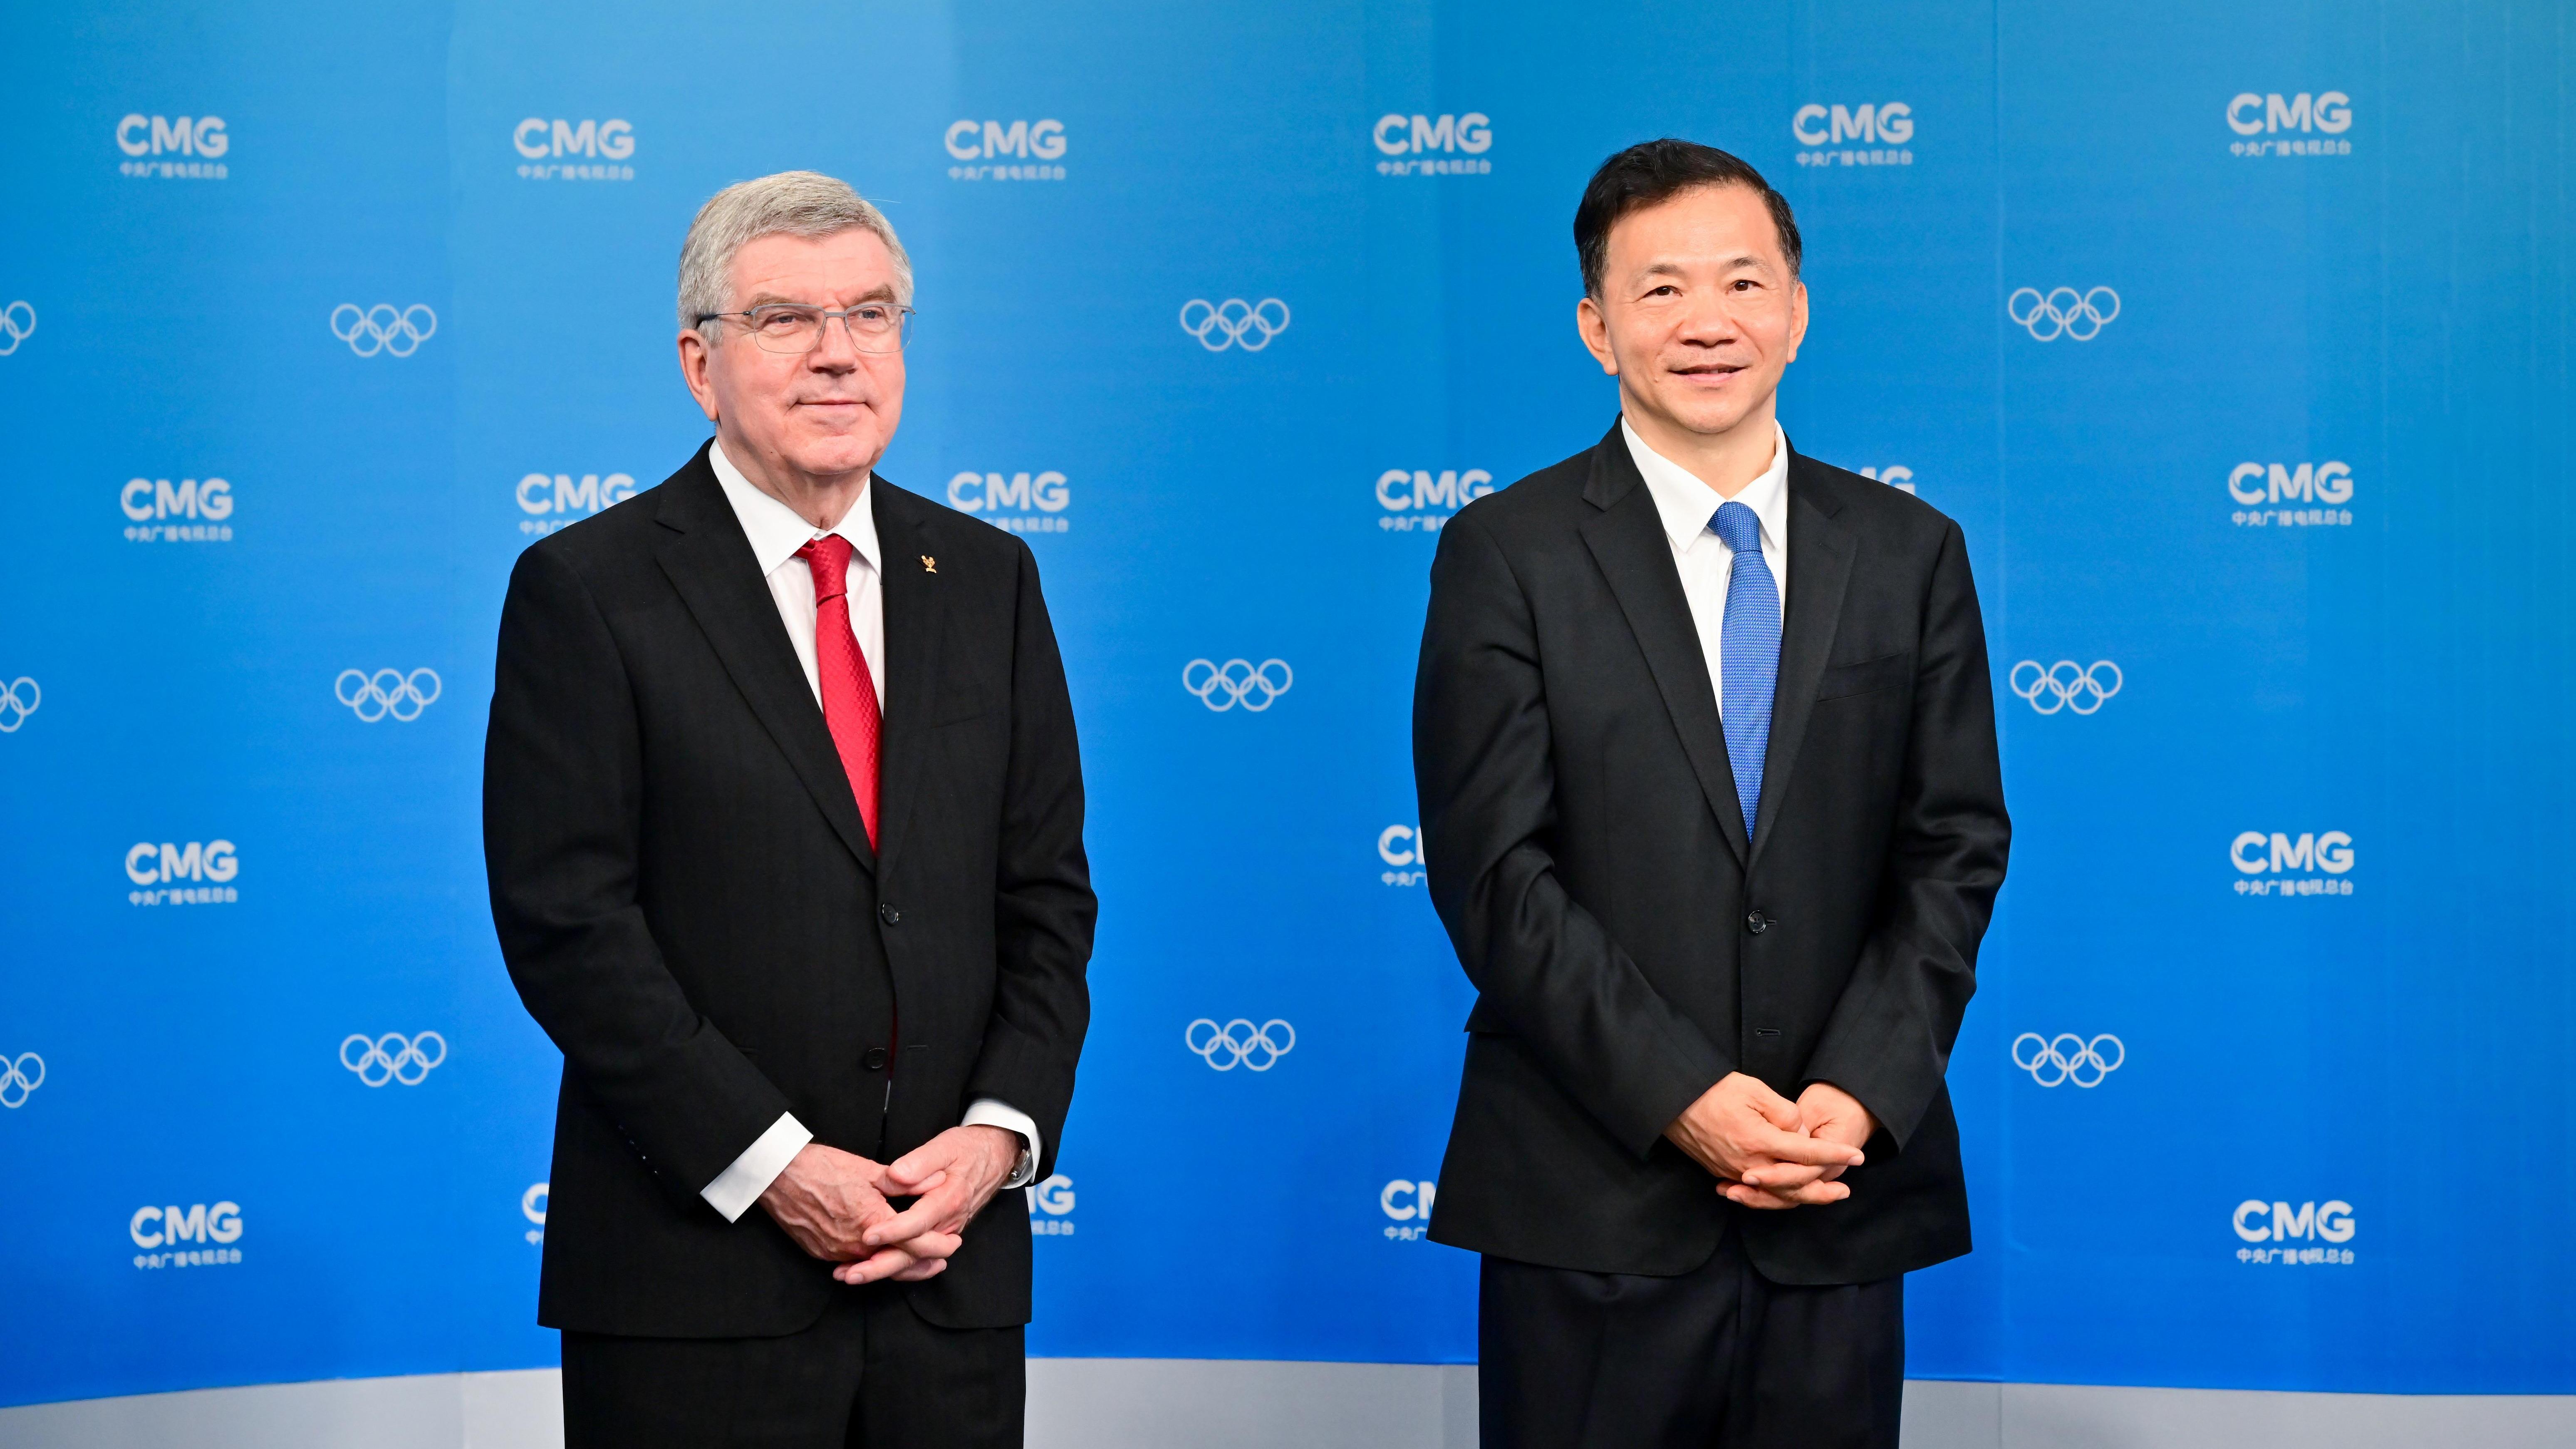 चाइना मिडिया ग्रुप पेरिस ओलम्पिक खेलकुदको मुख्य प्रसारणकर्ताका रुपमा आधिकारिक रूपमा आमन्त्रित